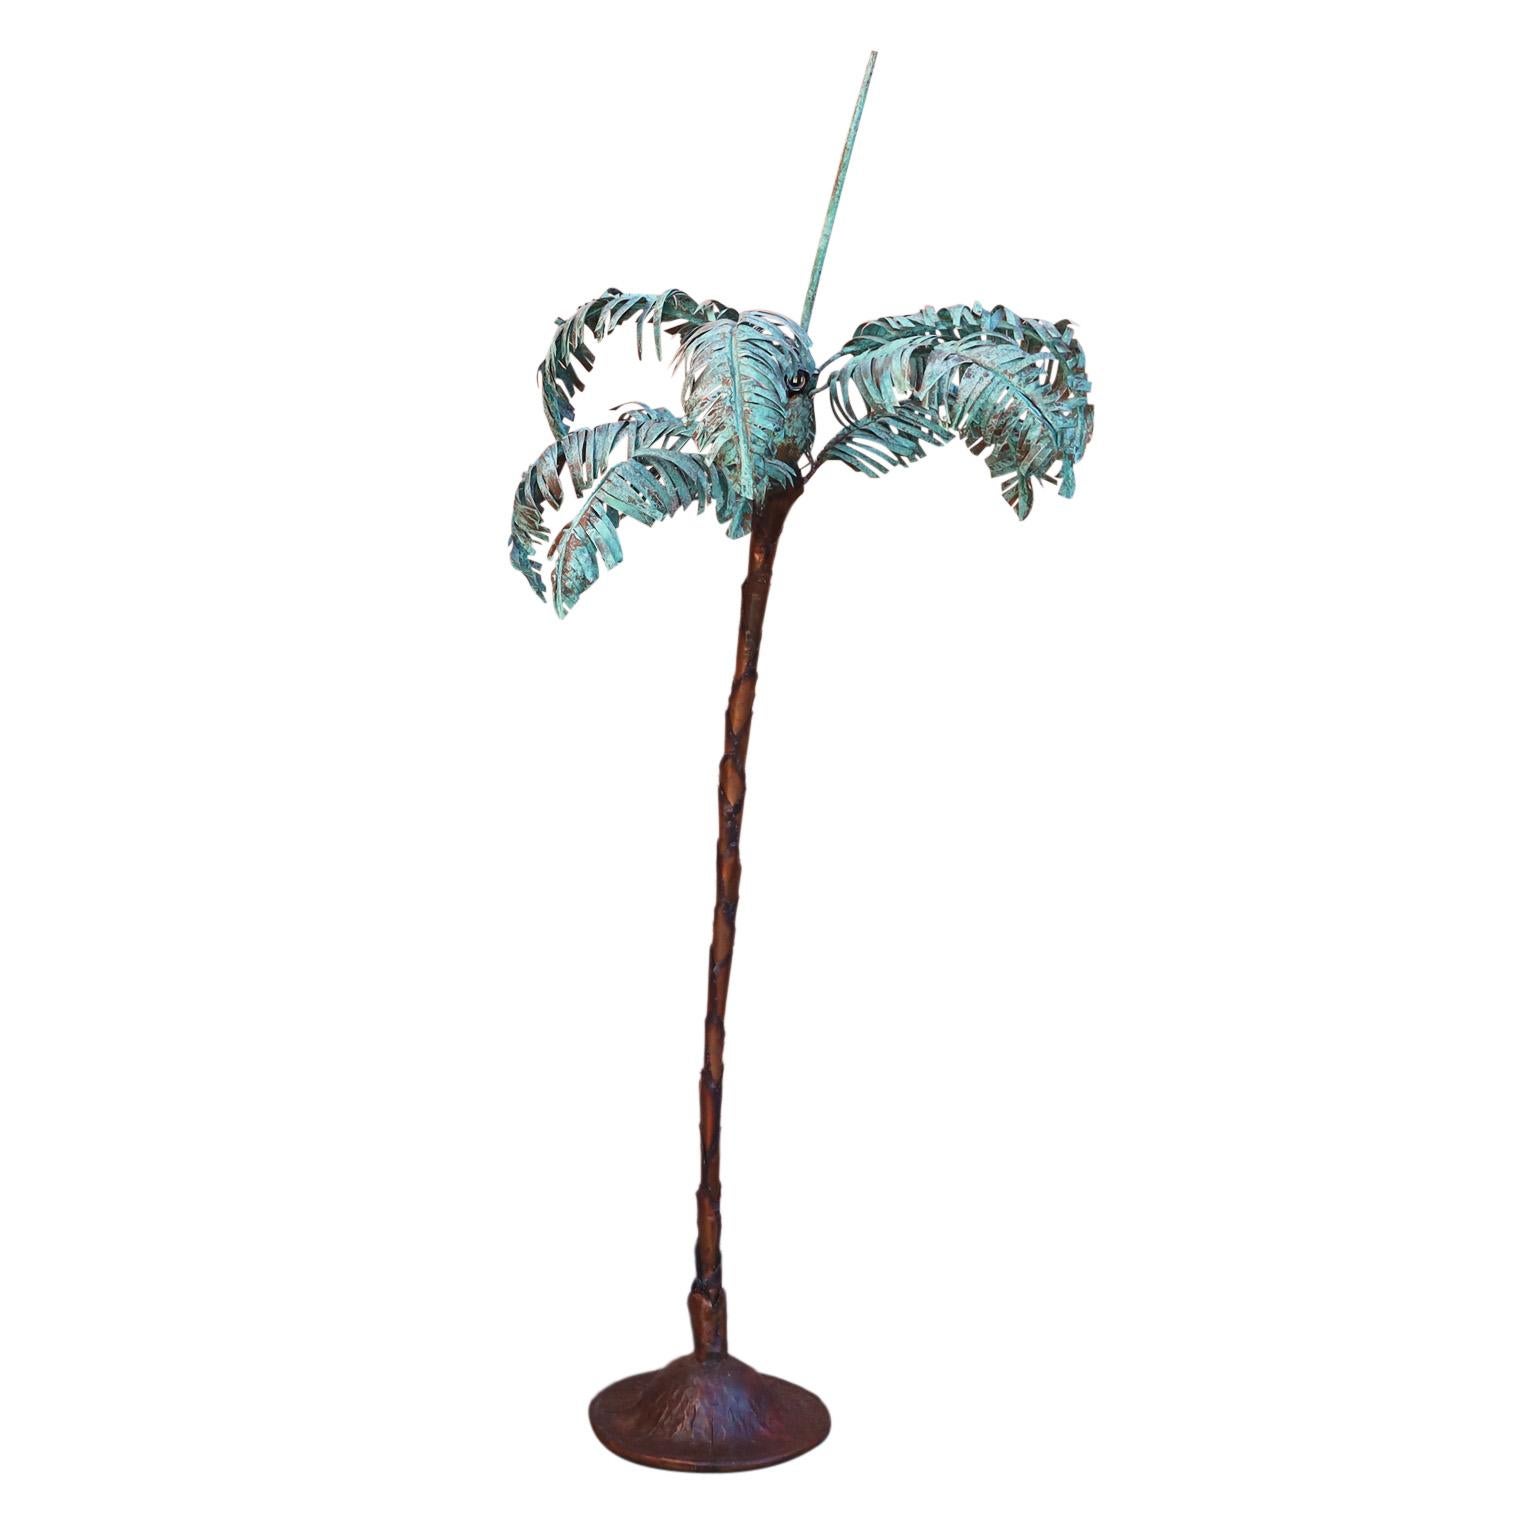 Lampe de sol vintage en forme de palmier, fabriquée à la main en cuivre avec des influences sculpturales et brutales, avec des feuilles de palmier patinées en cuivre vert, quatre douilles d'ampoules, un tronc stylisé en couches de cuivre et une base